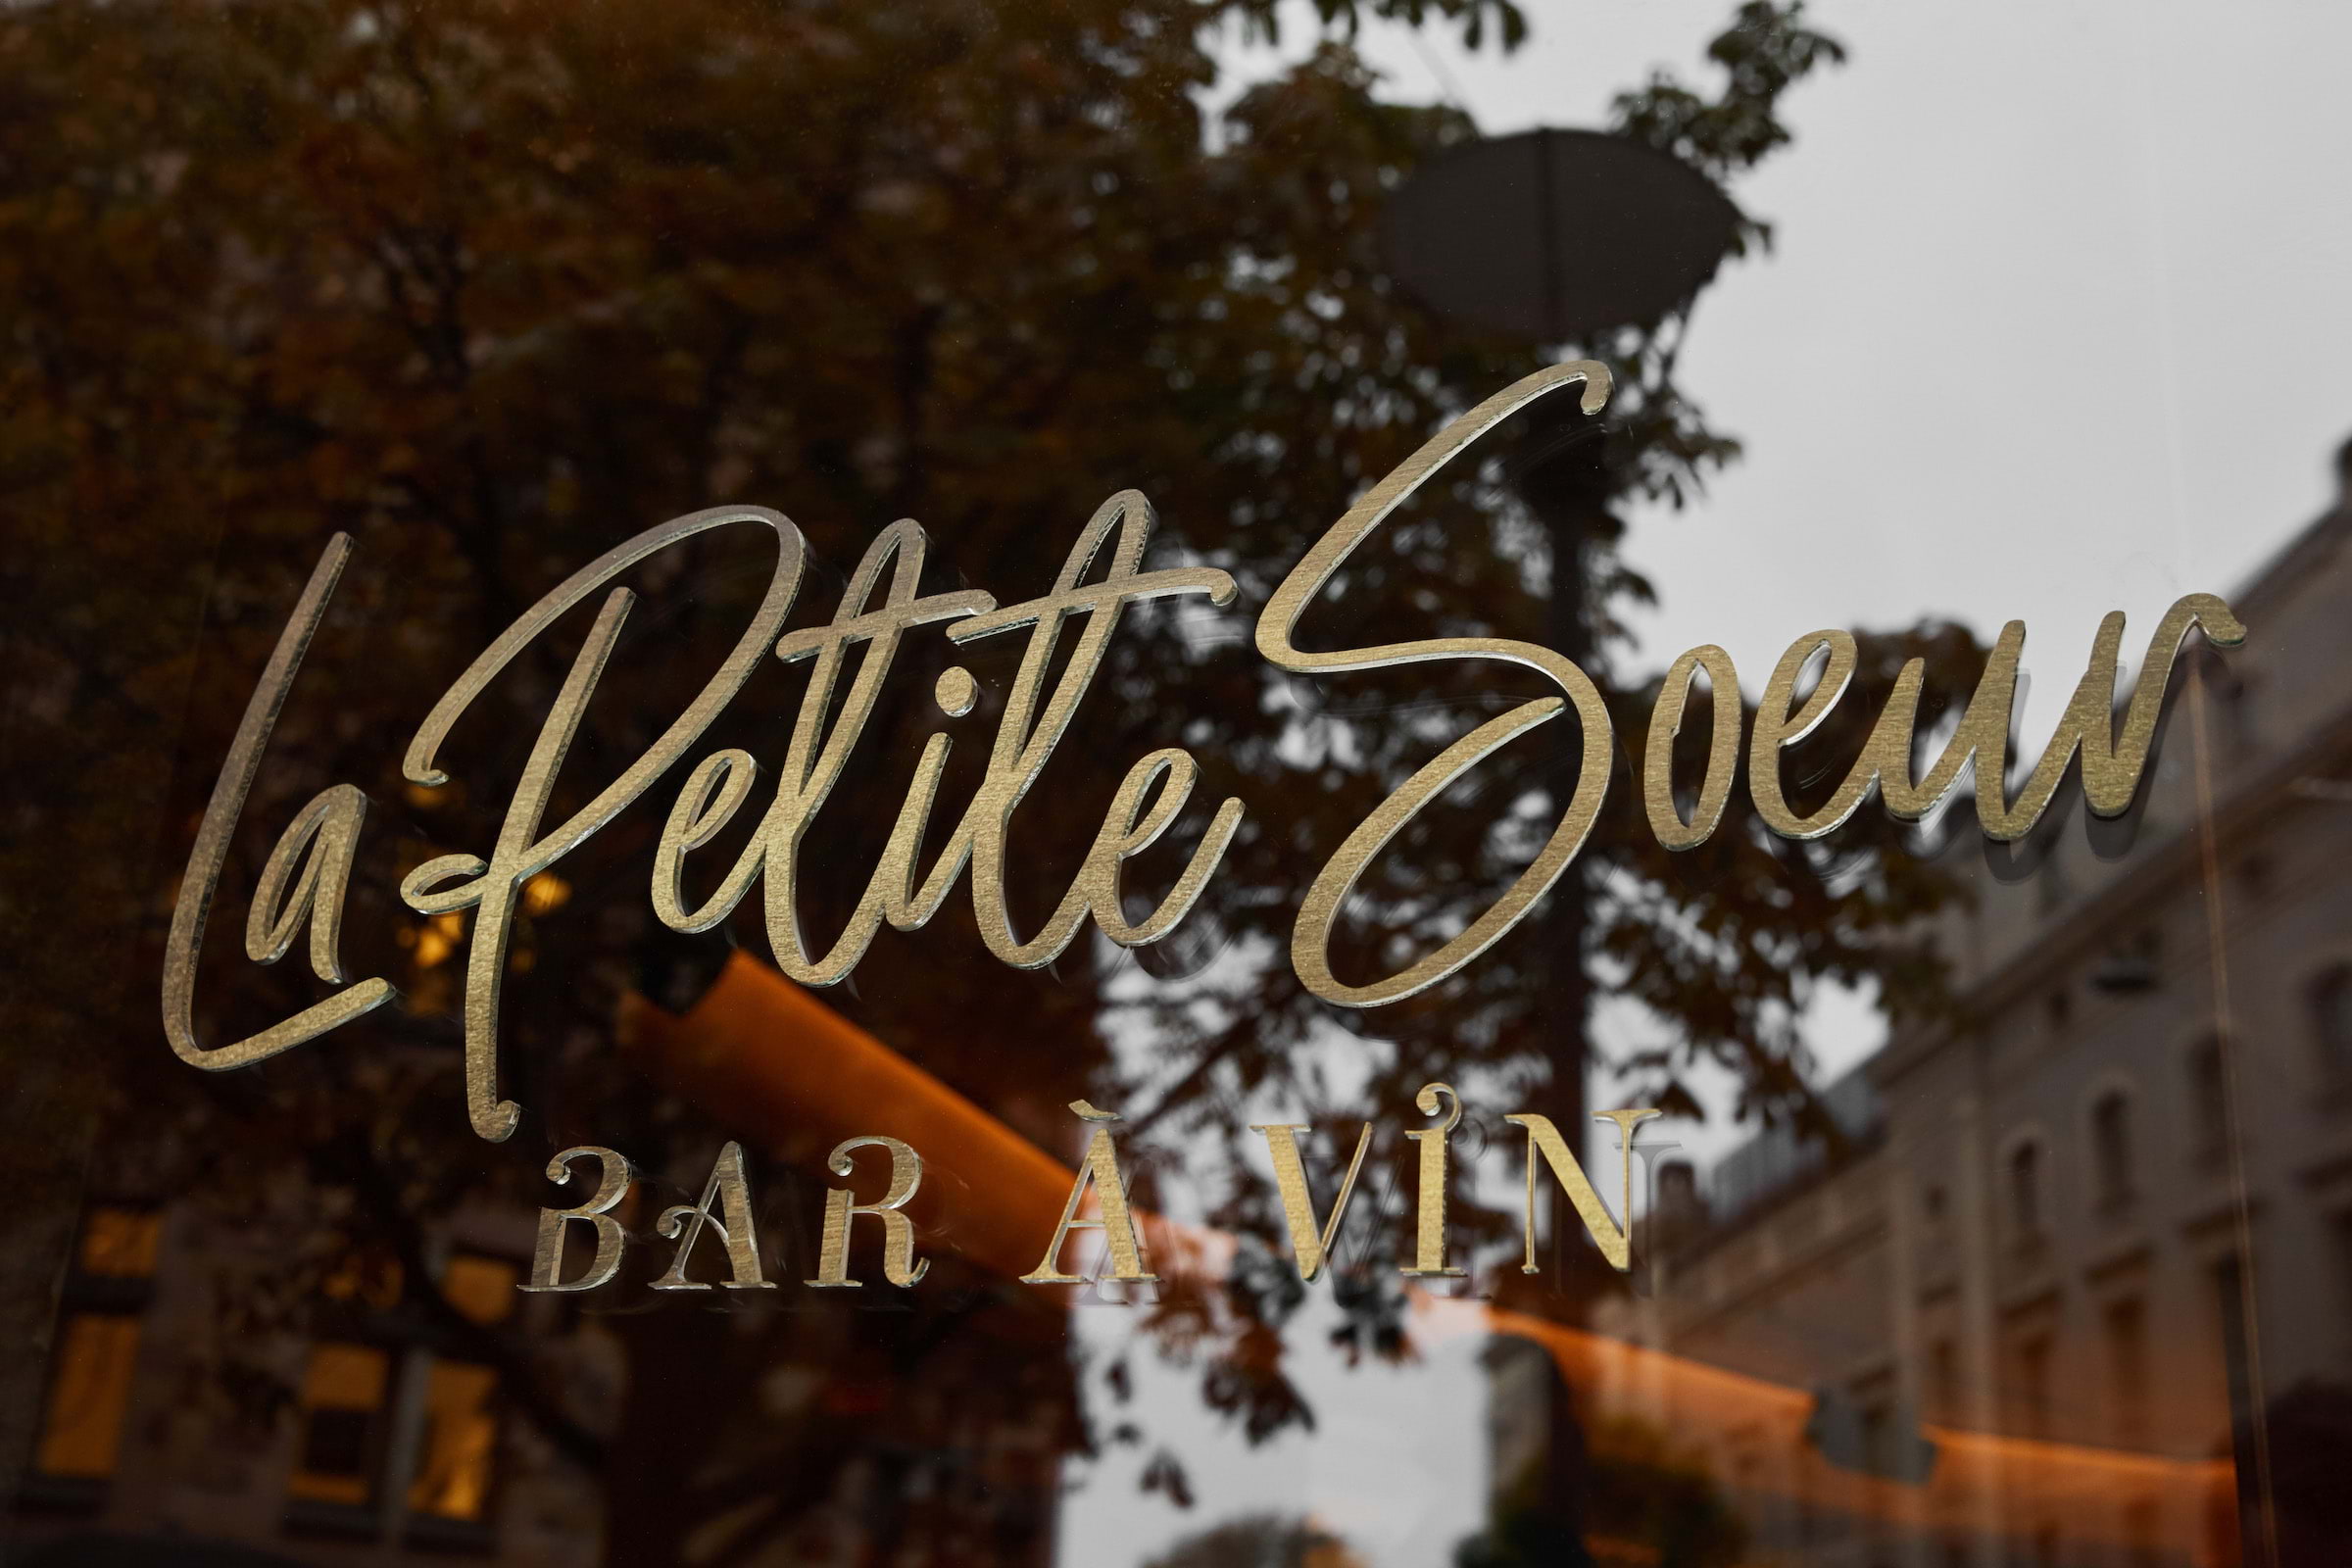 Chez Jolie blir med lillasyster – vinbaren La Petite Soeur